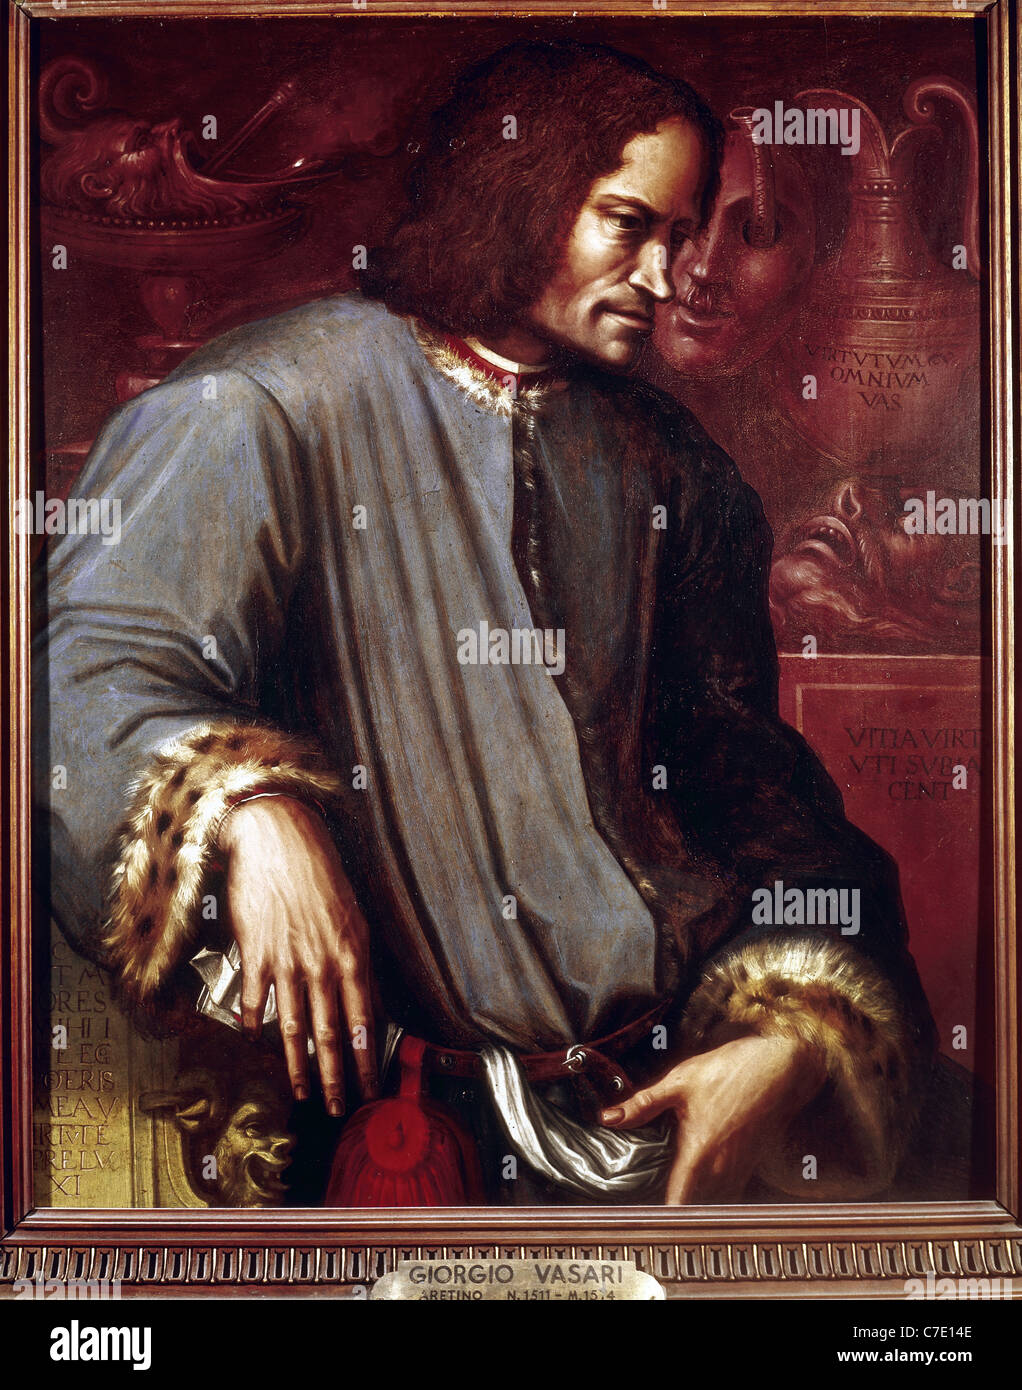 Lorenzo de Medici, connu sous le magnifique (1449-1492). Portrait par Giorgio Vasari. Galerie des Offices. Florence. L'Italie. Banque D'Images